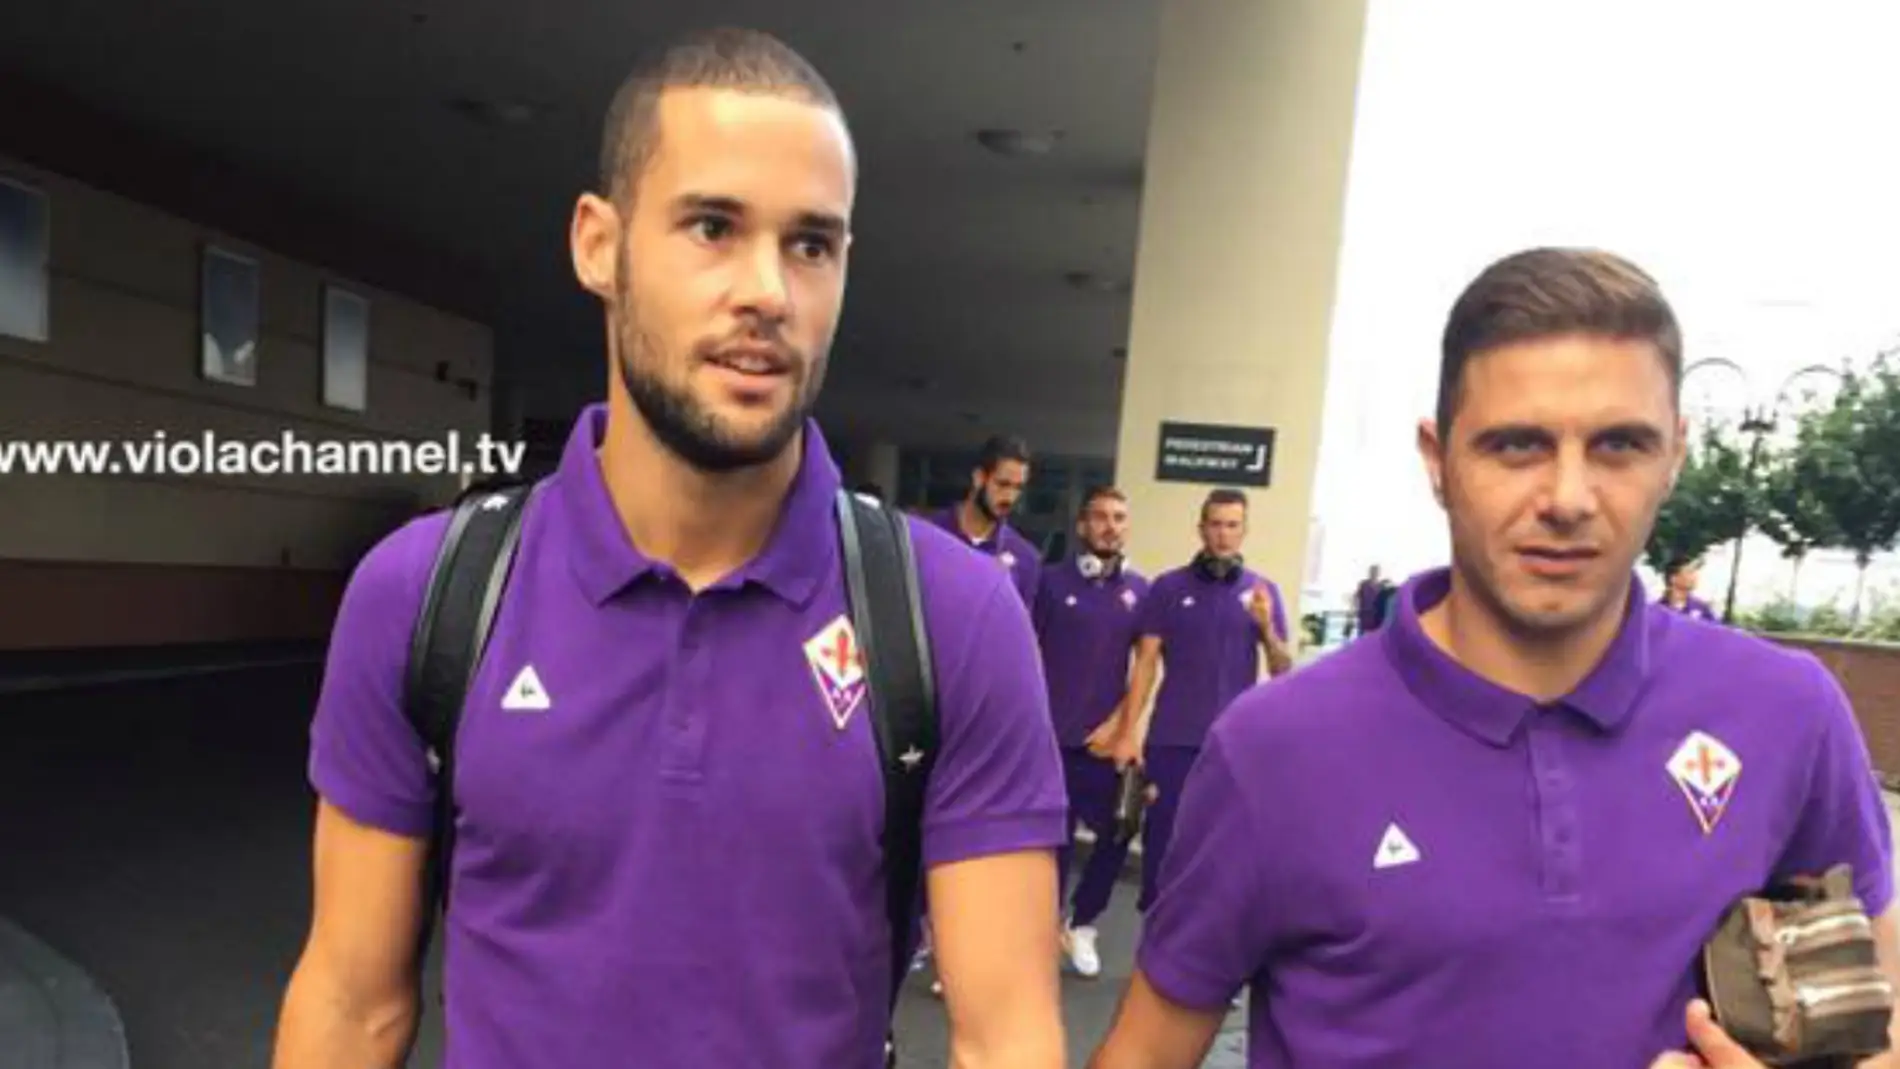 Mario Suárez luce los colores de la Fiorentina junto a Joaquín